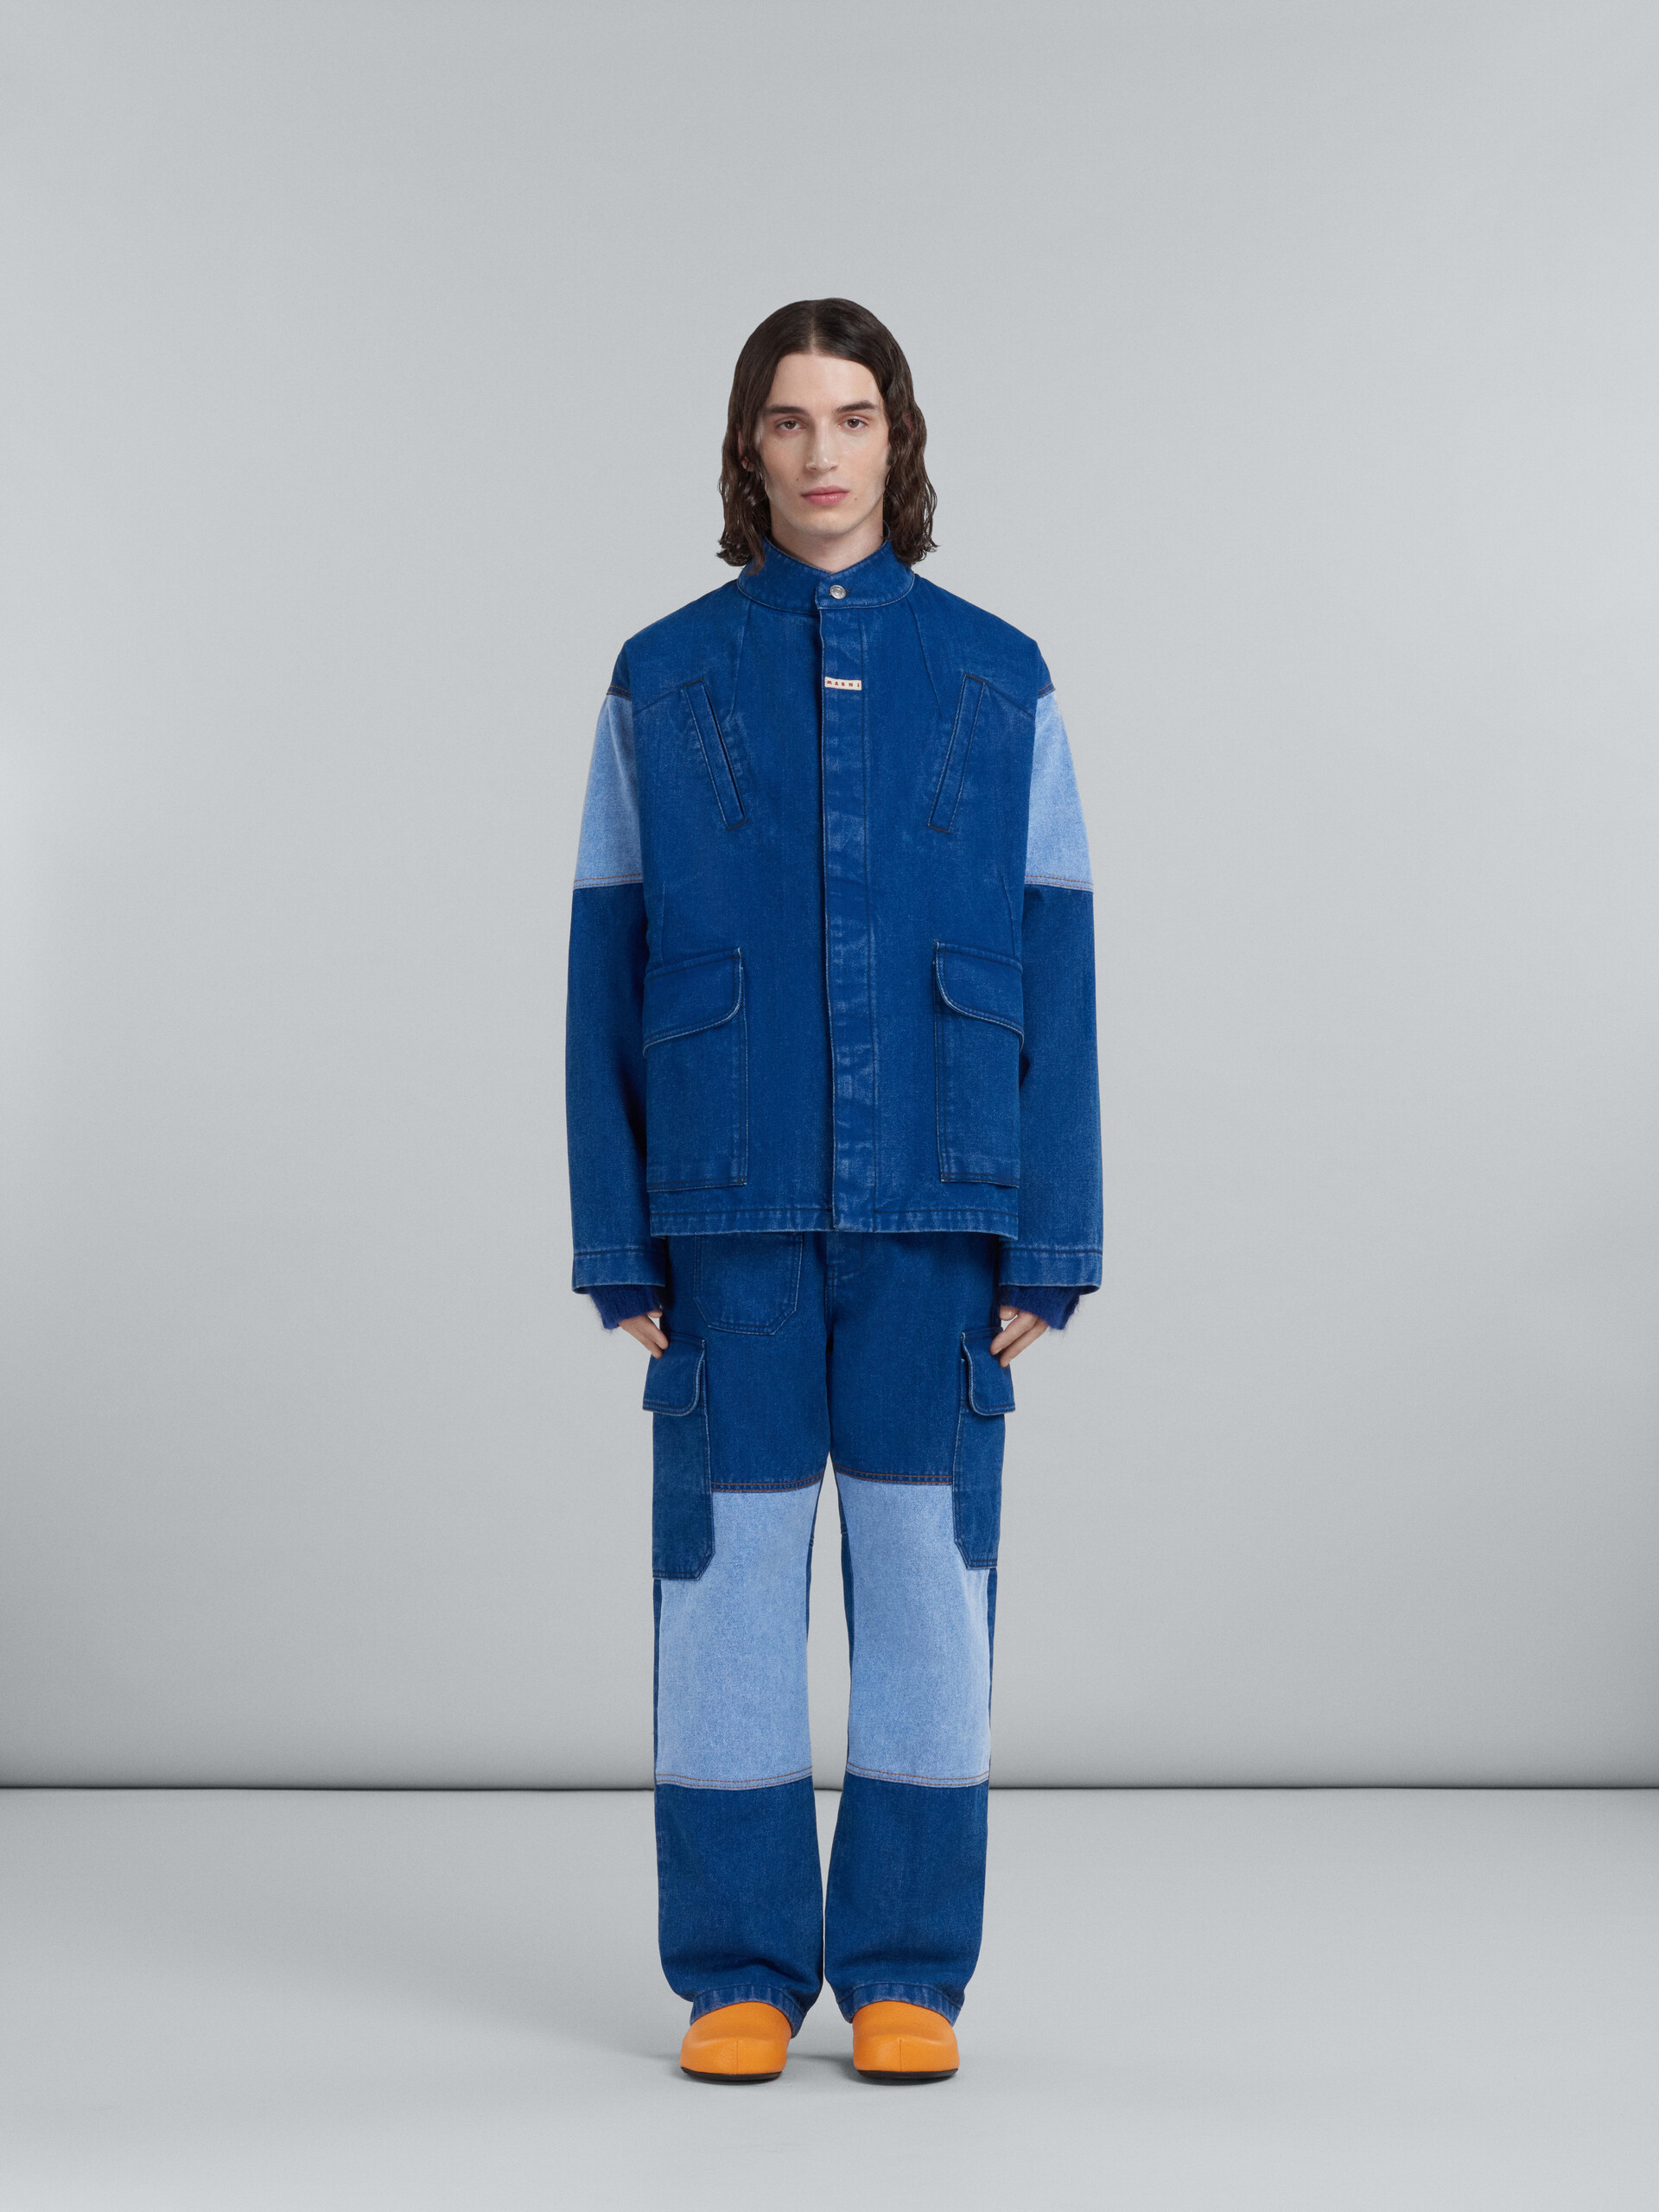 Jacket in coated blue denim - Jackets - Image 2